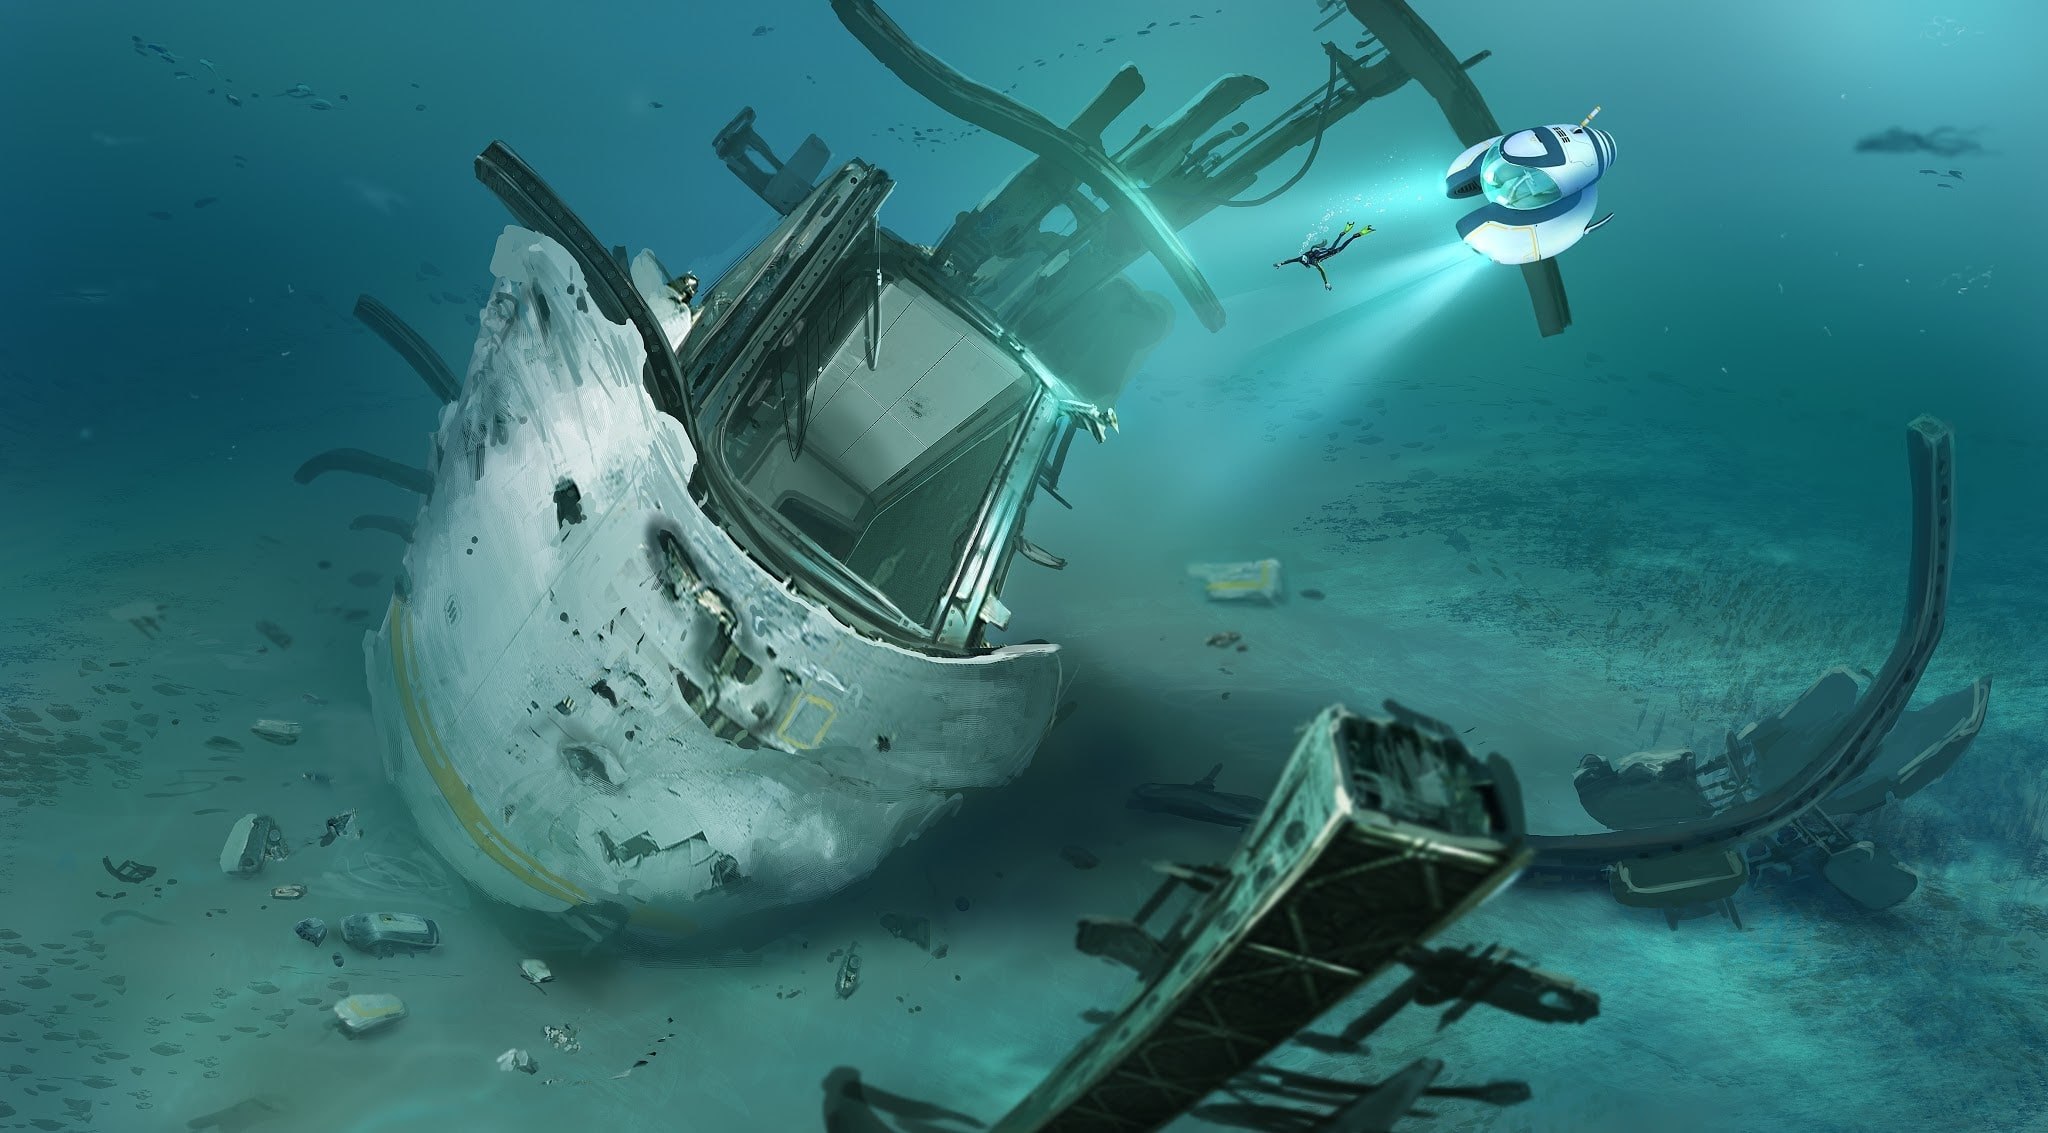 اکانت اریجینال PS4 بازی Subnautica | ریجن اروپا و امریکا